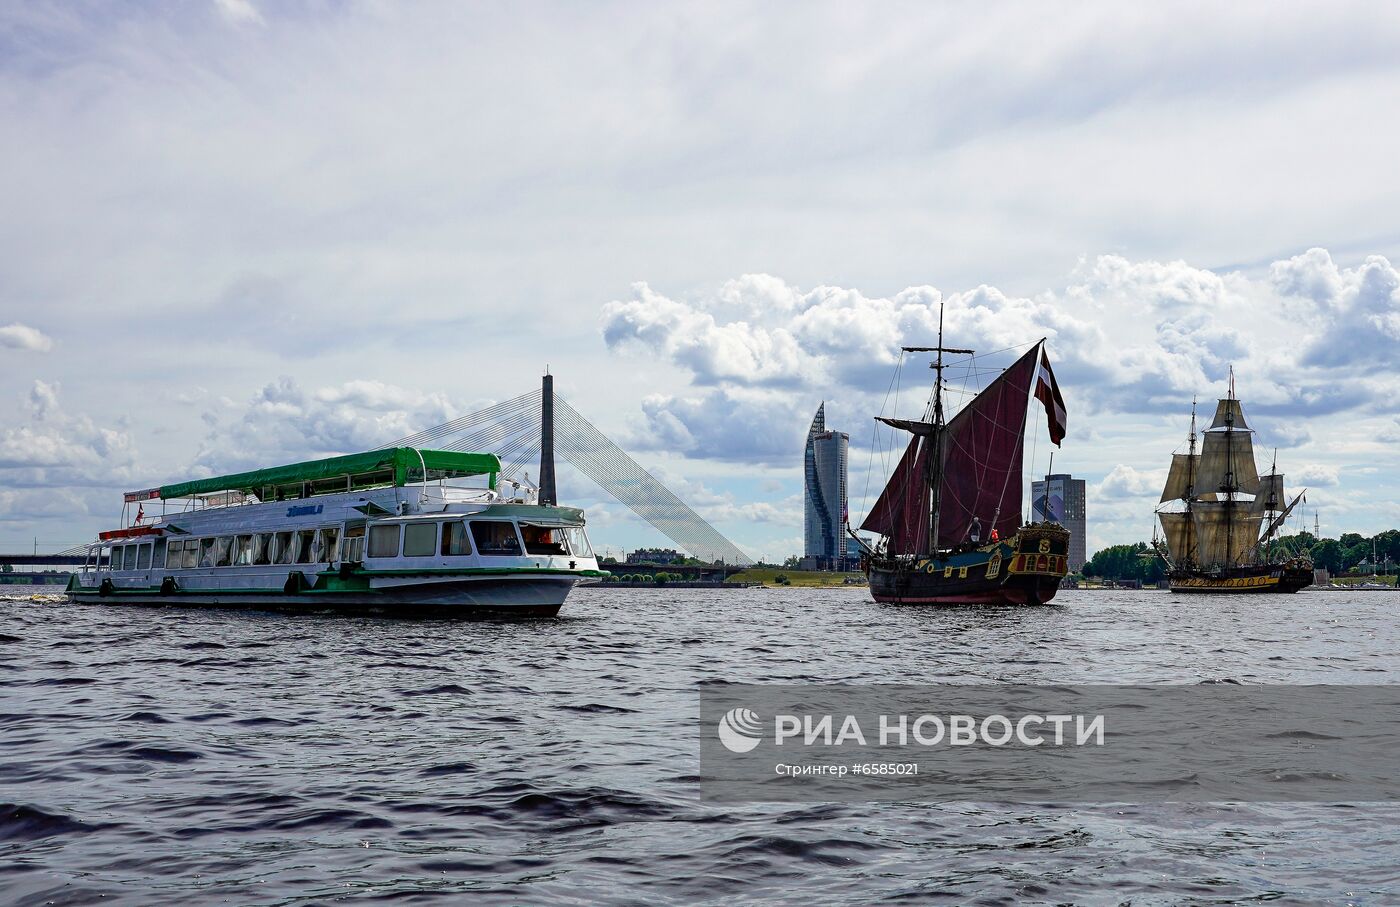 Российский фрегат "Штандарт" прибыл в Ригу